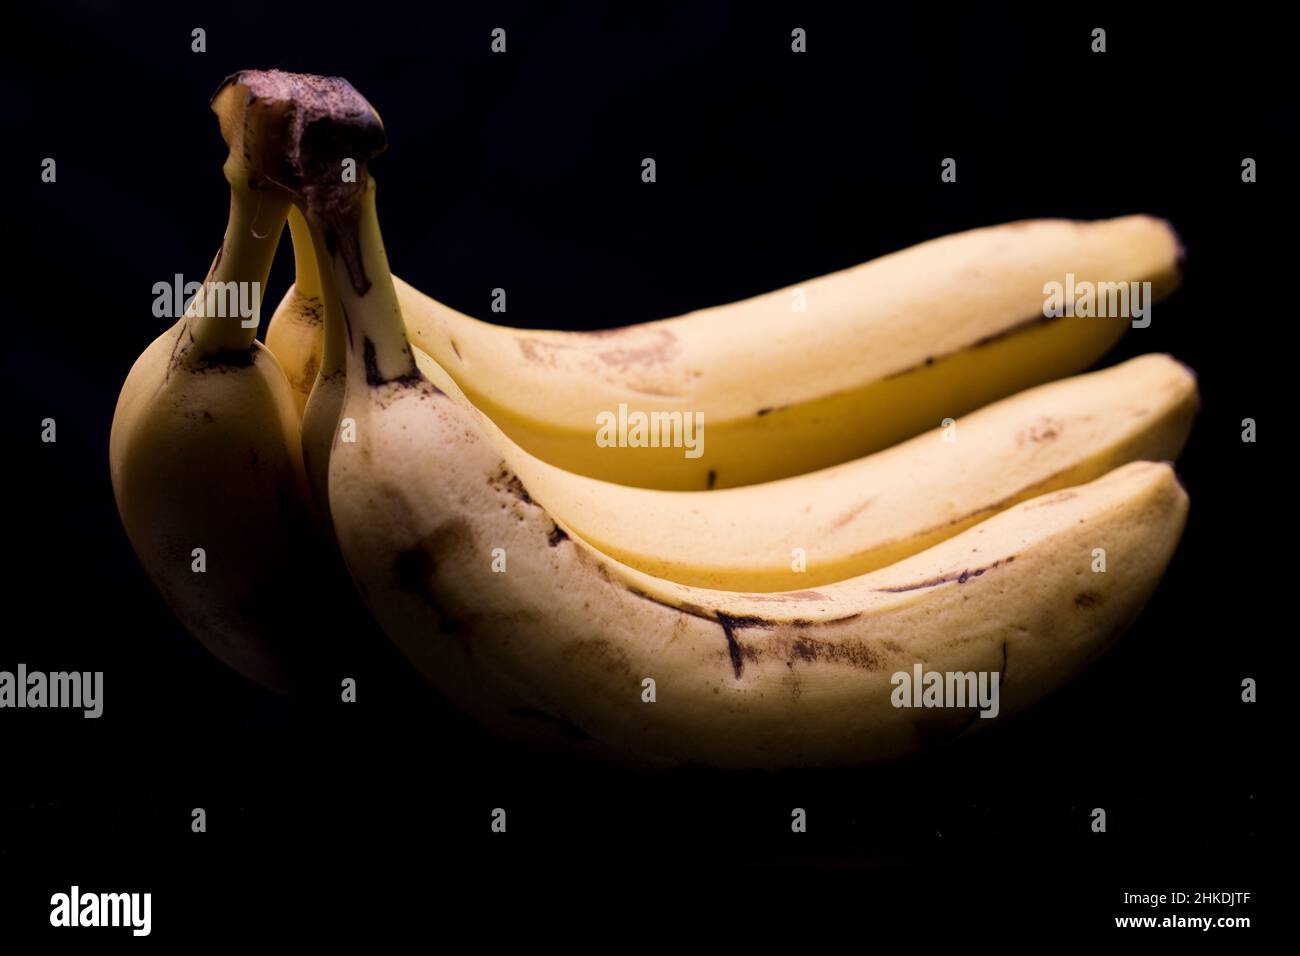 Bananas ripe and ready to eat bananas. Close up macro view of ripe bananas. Stock Photo